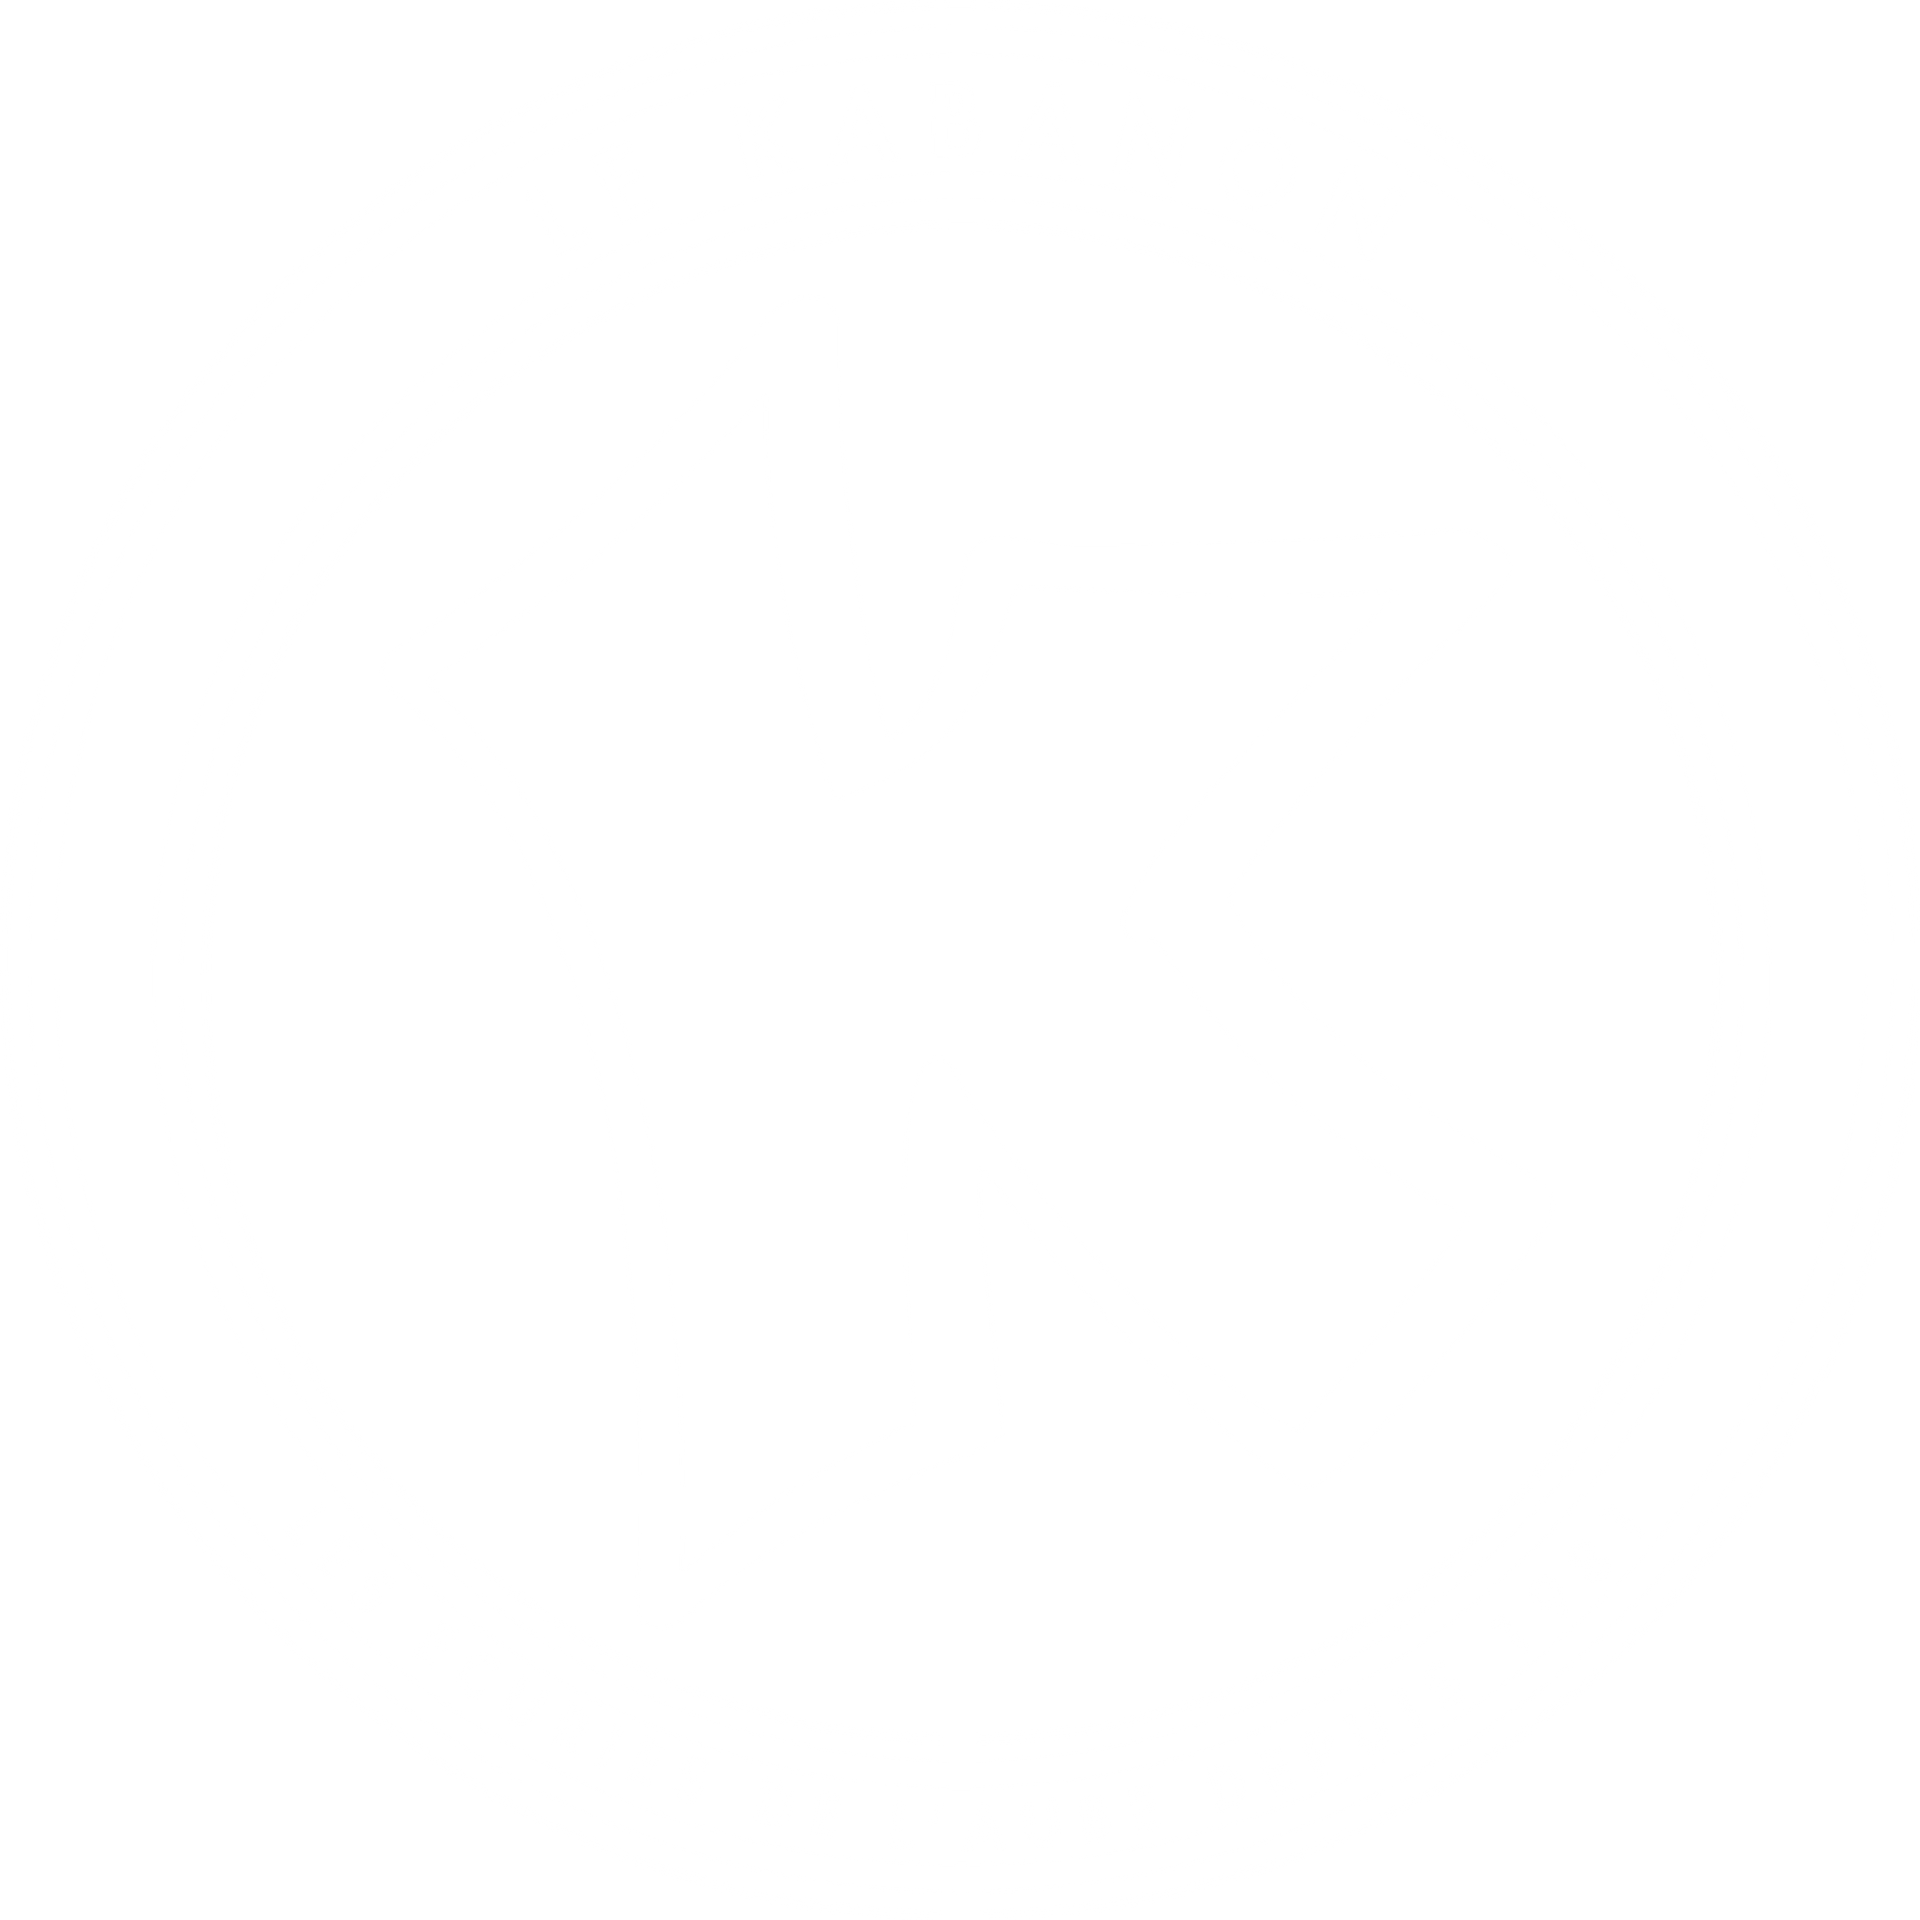 Logo Le Kabanon des Écuries de l'Aube